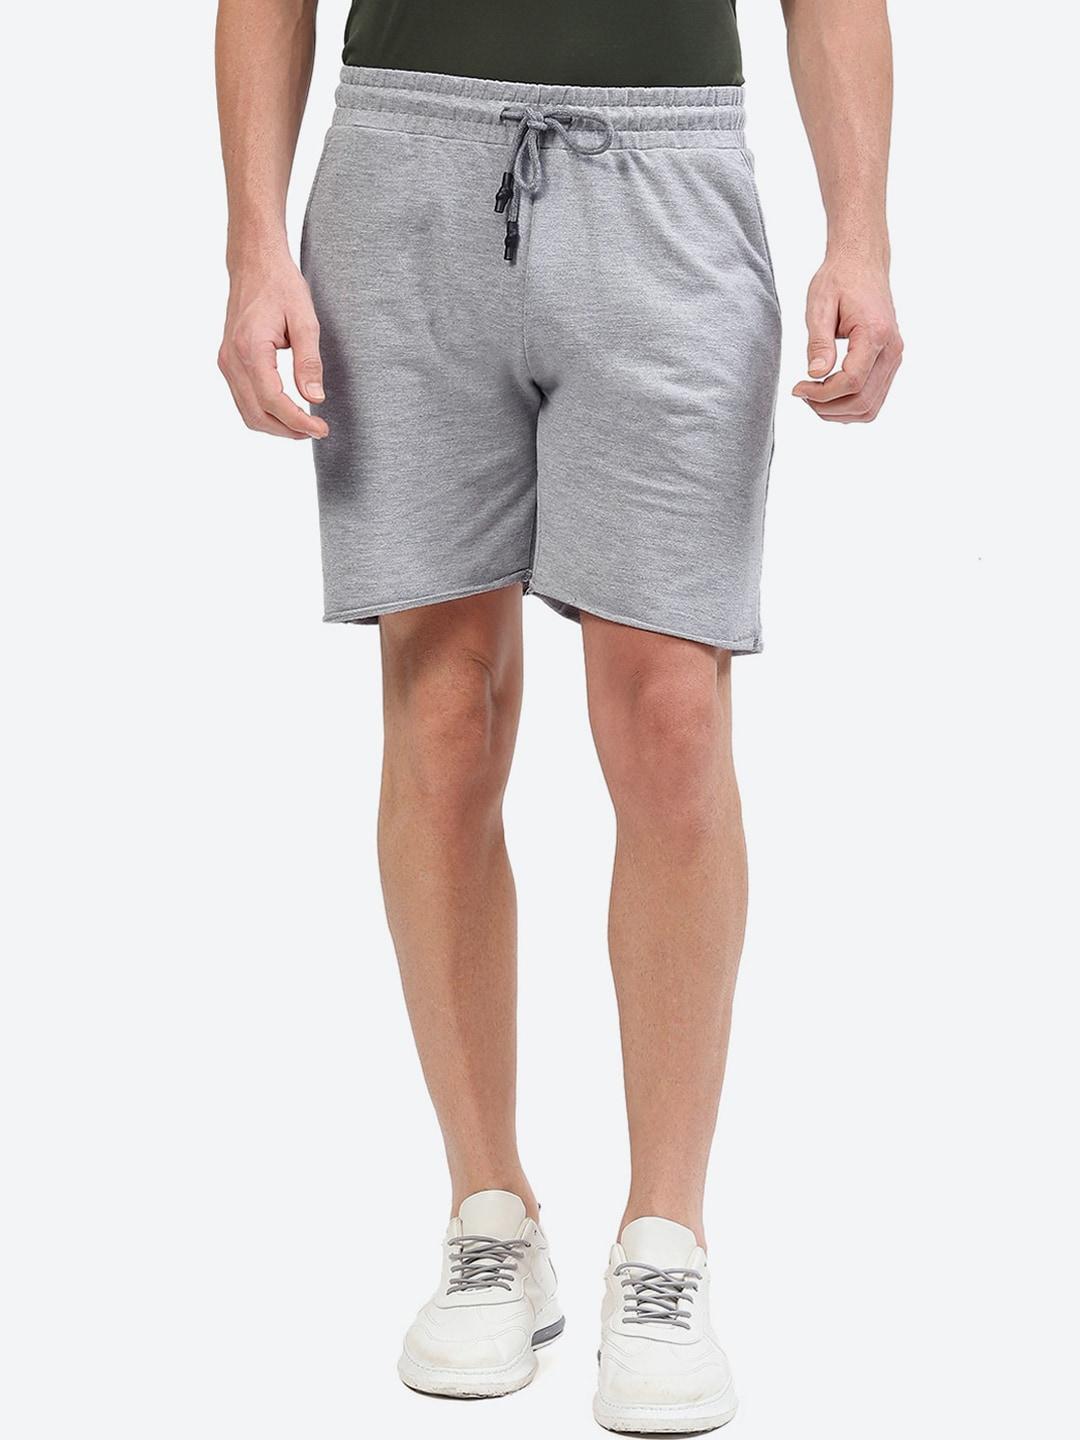 2bme-men-mid-rise-regular-fit-cotton--sports-shorts